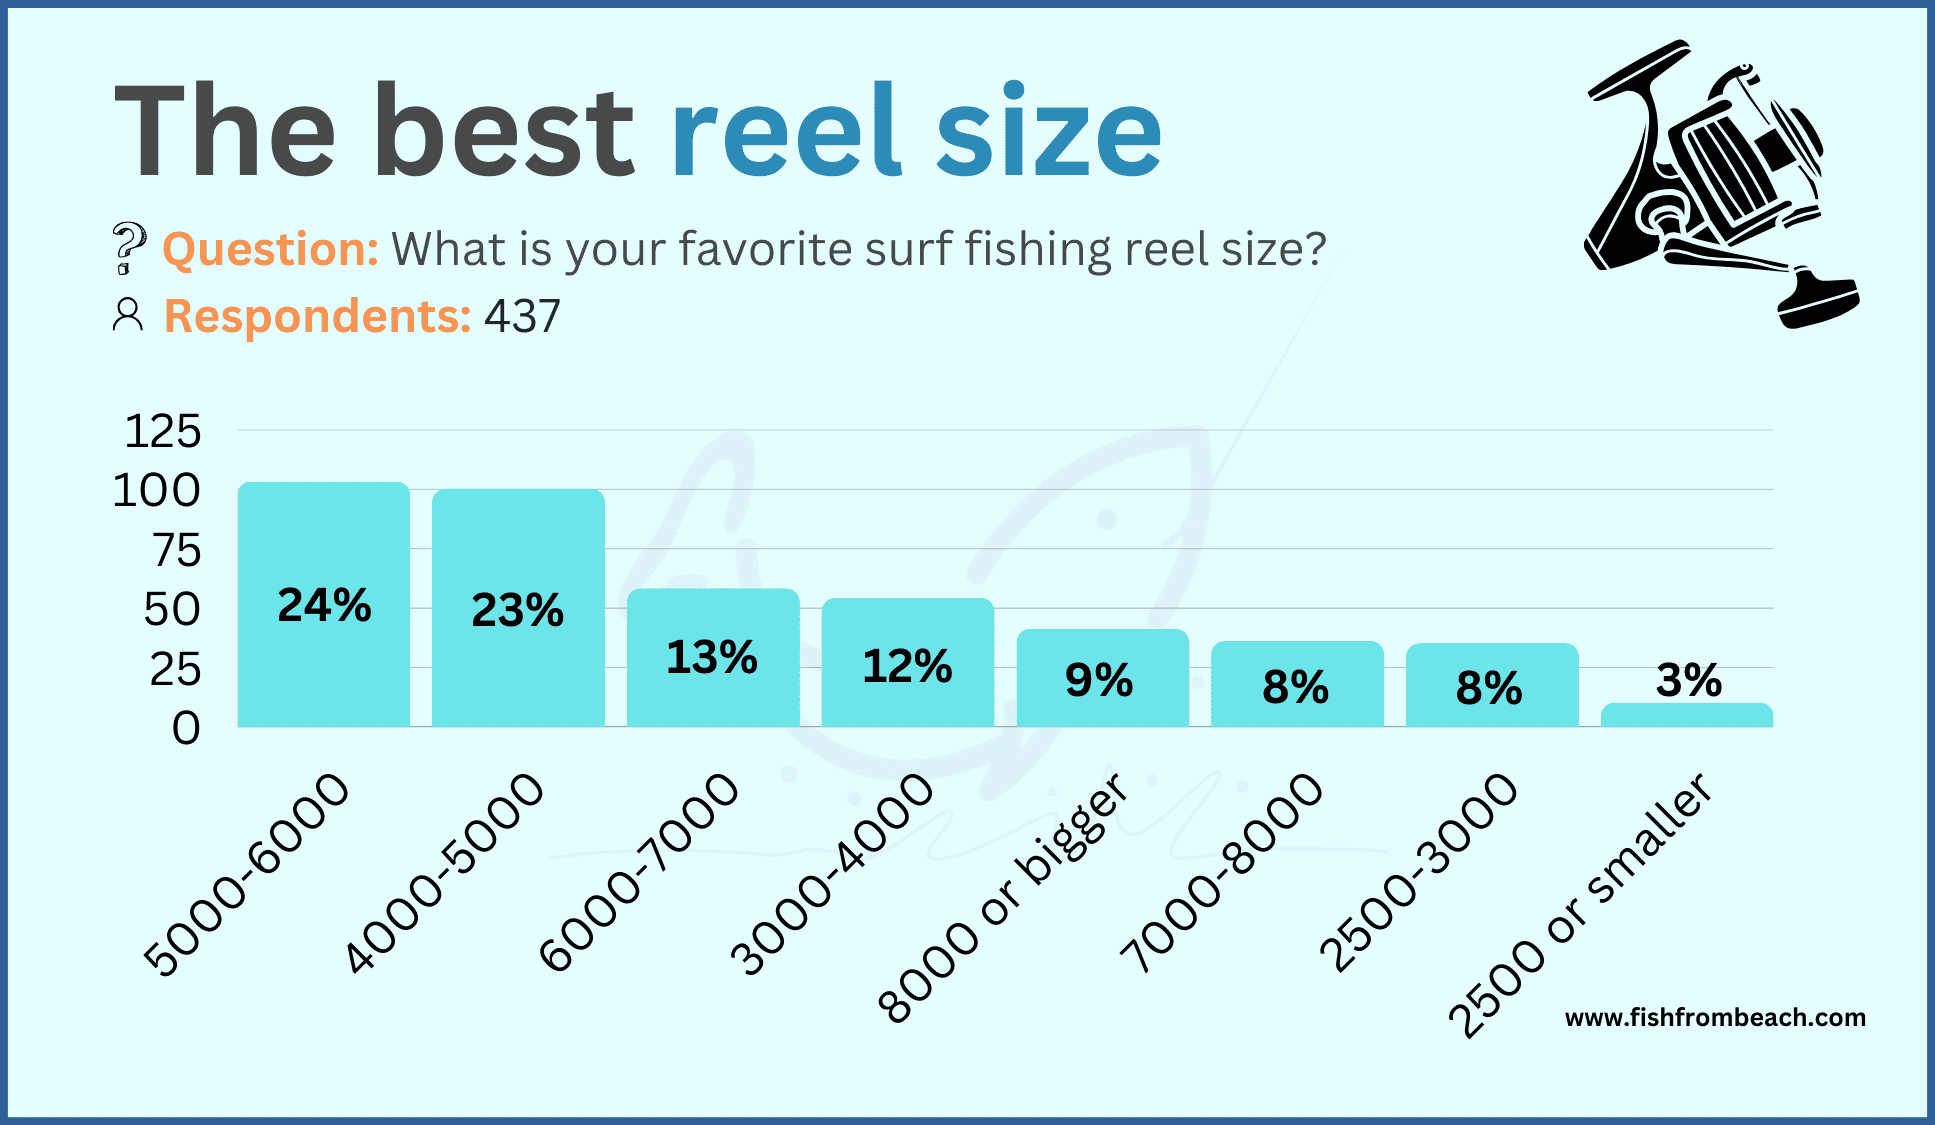 Preferred reel size among surf anglers